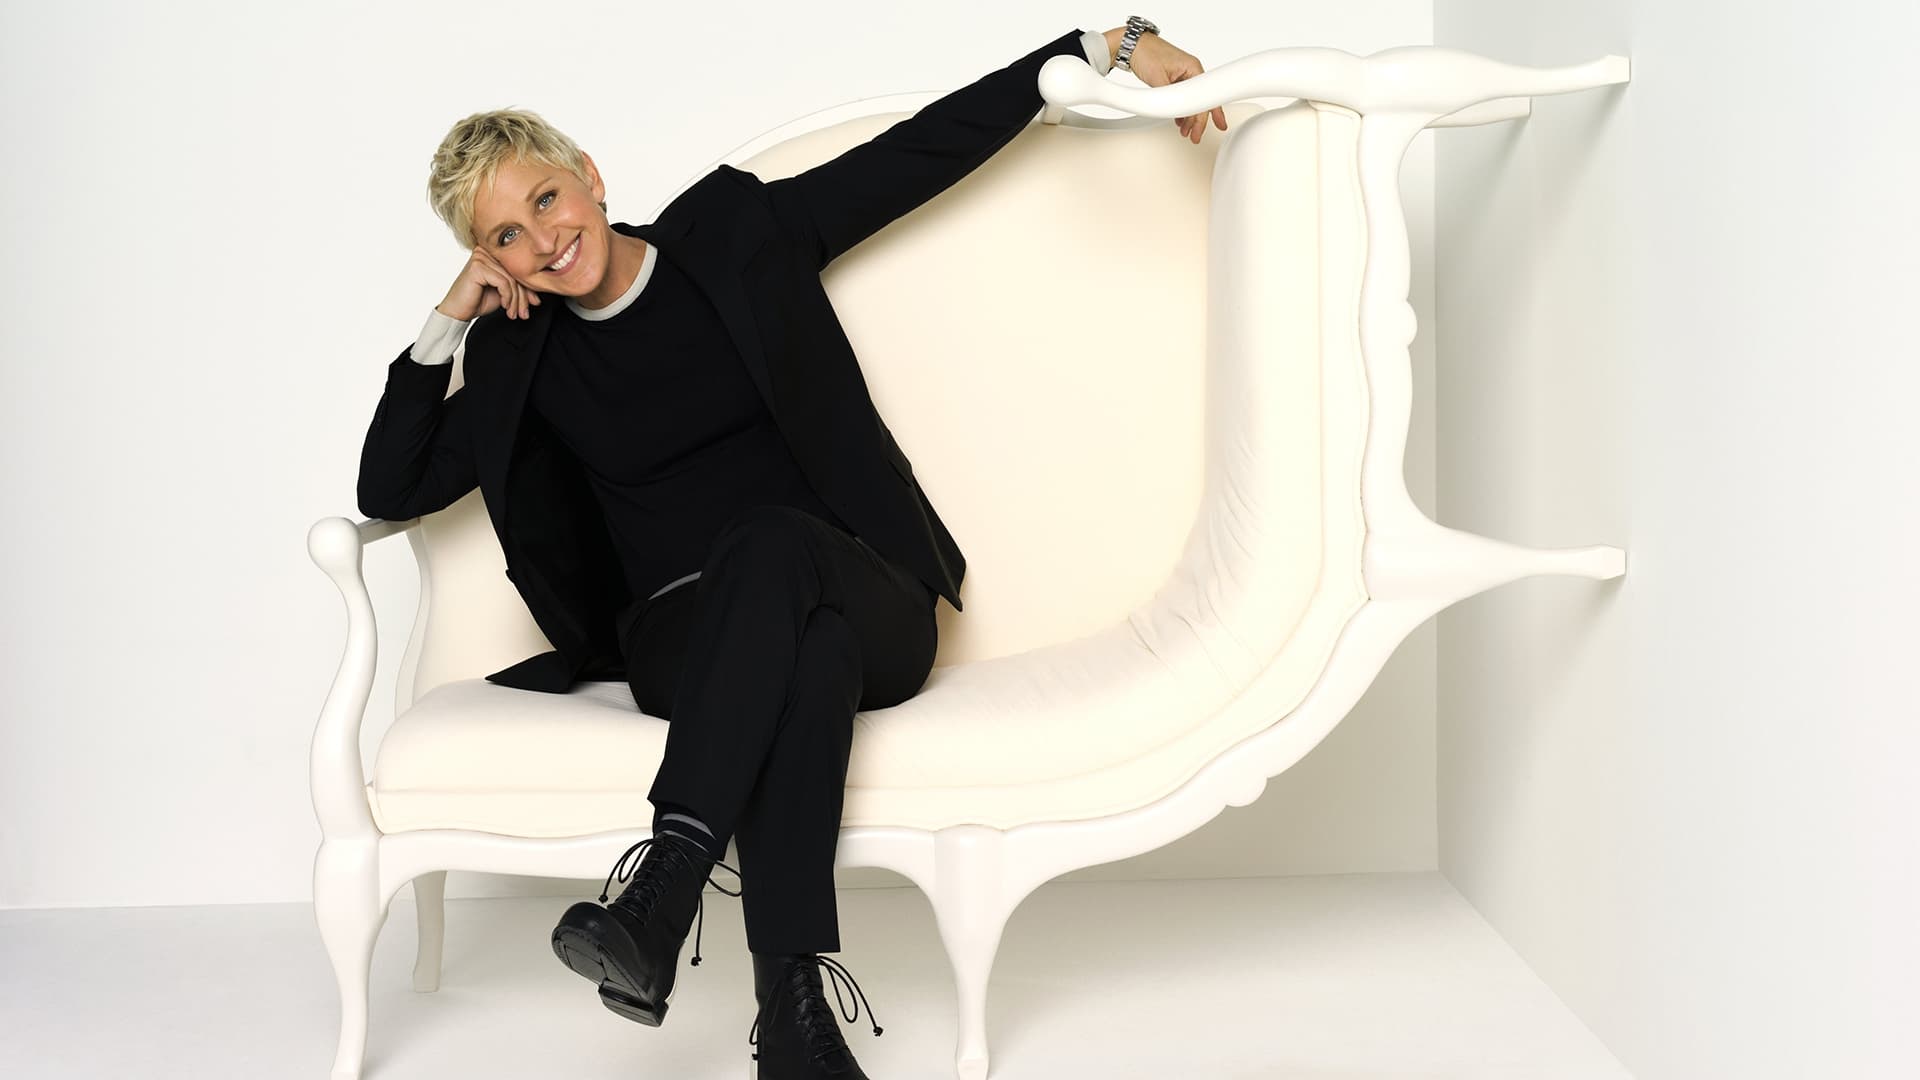 The Ellen DeGeneres Show